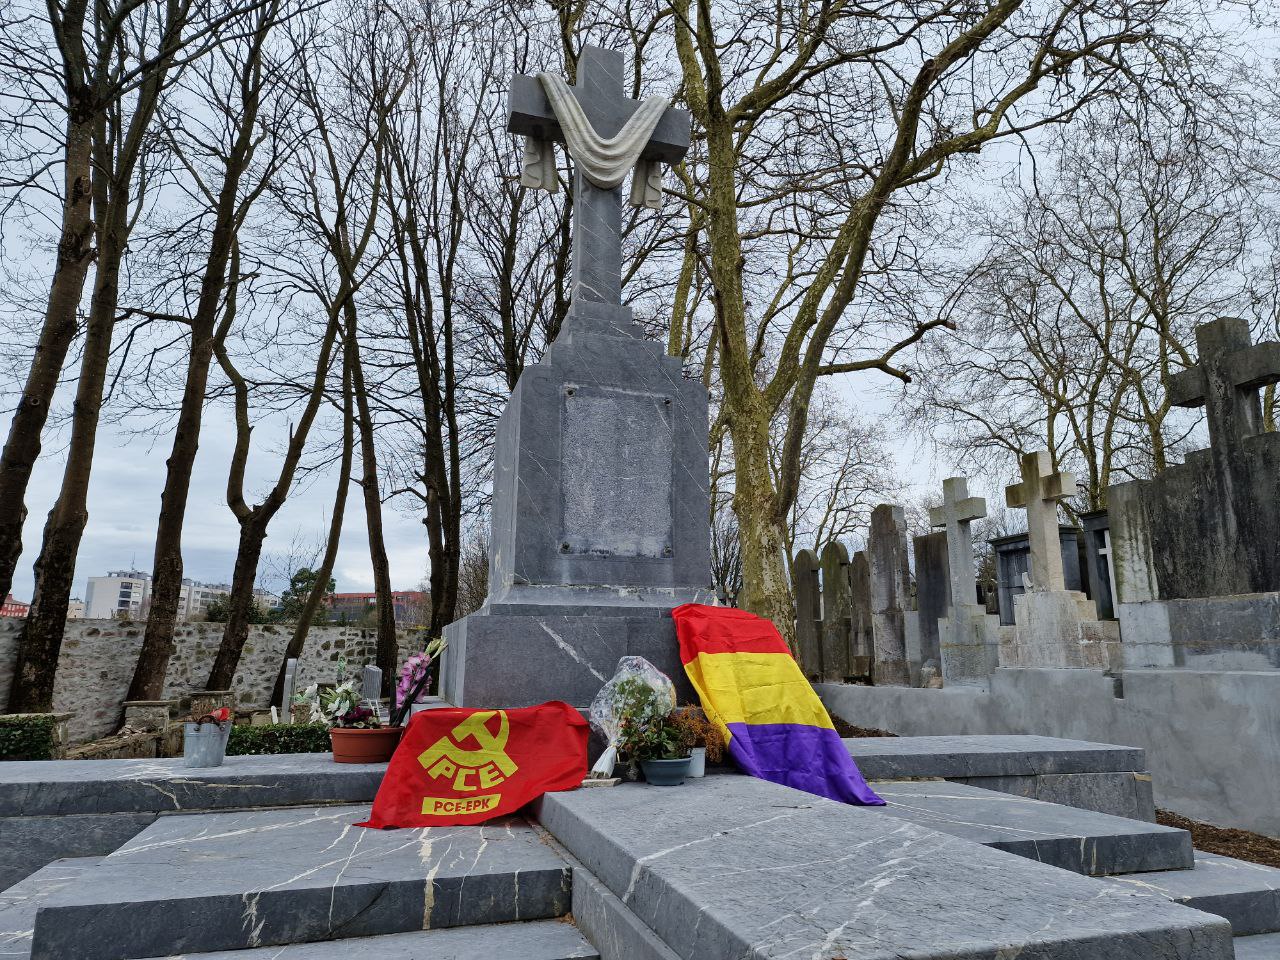 El PCE-EPK acudirá al homenaje a los republicanos inhumados en el mausoleo de Polloe y pide una resignificación de la fosa.